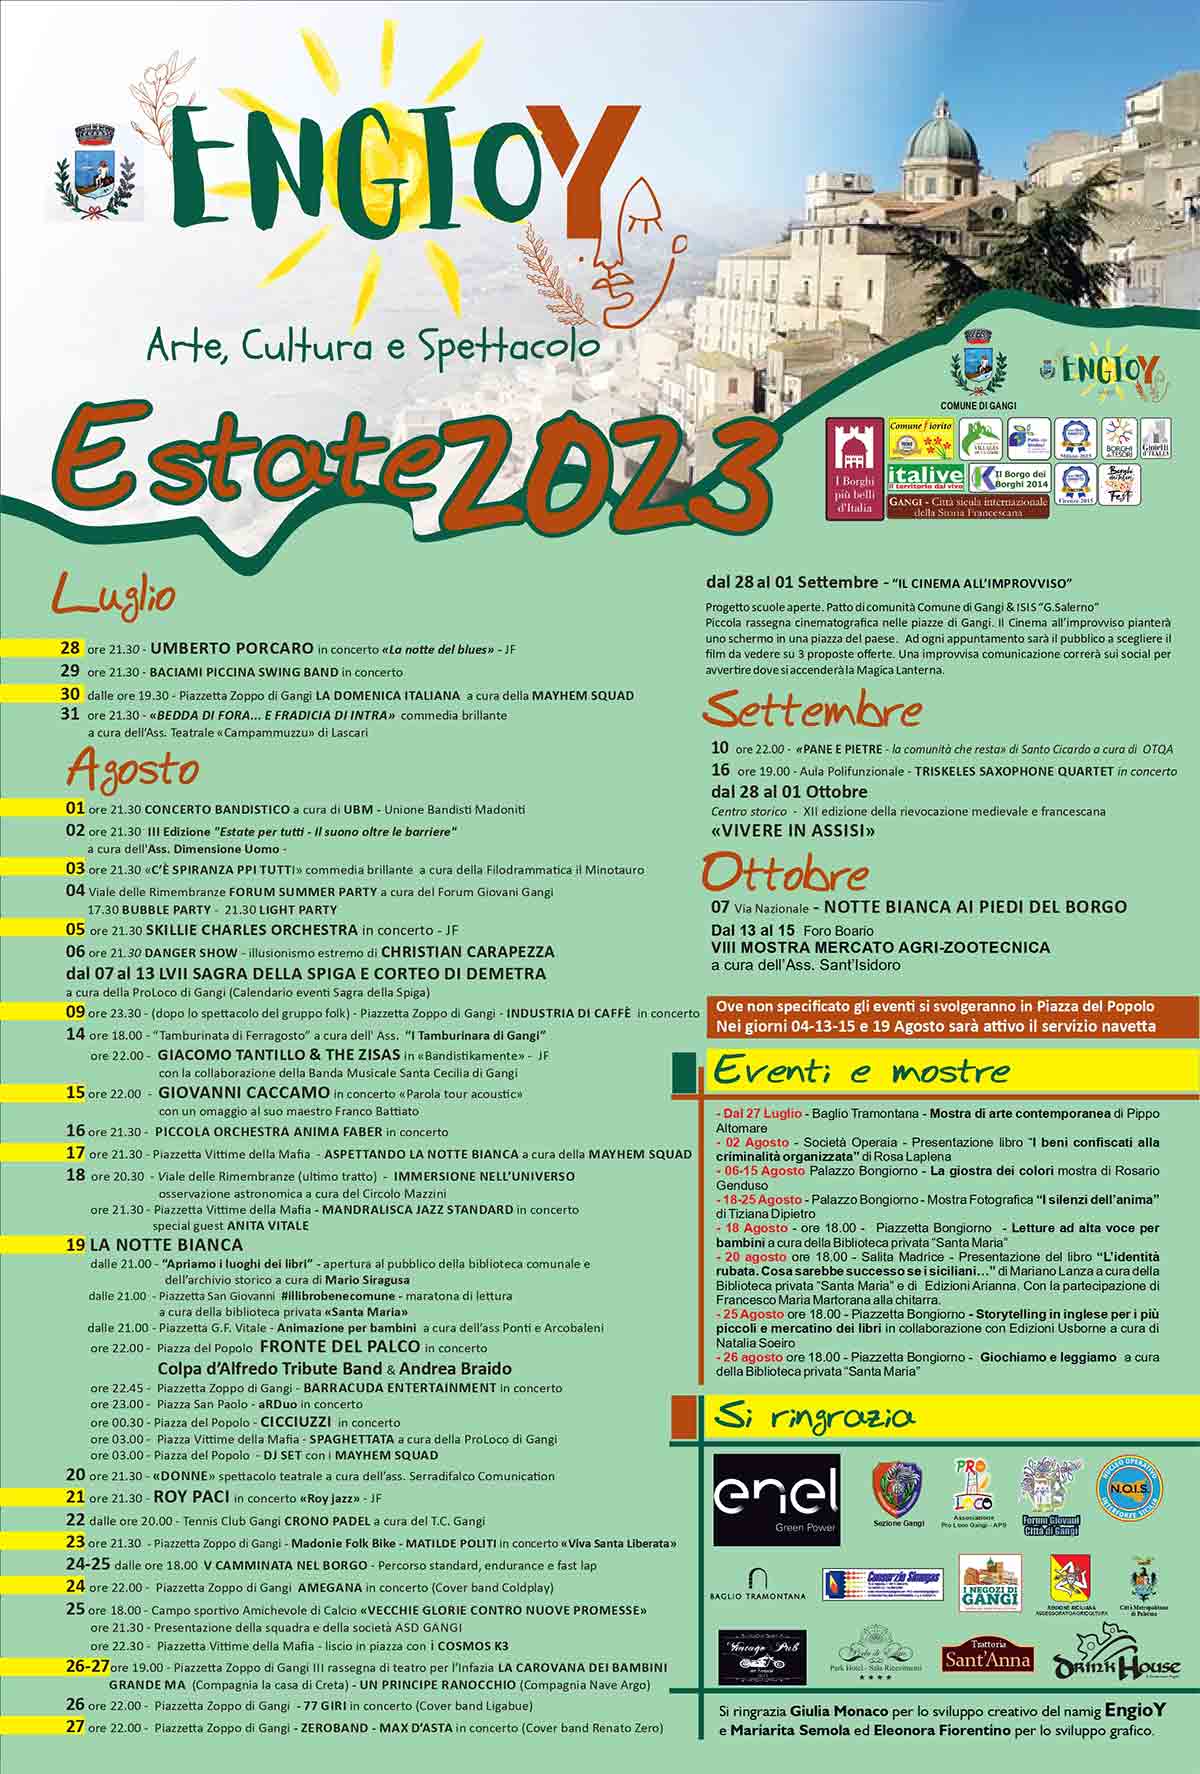 Engioy 2023 - Arte, Cultura e Spettacolo